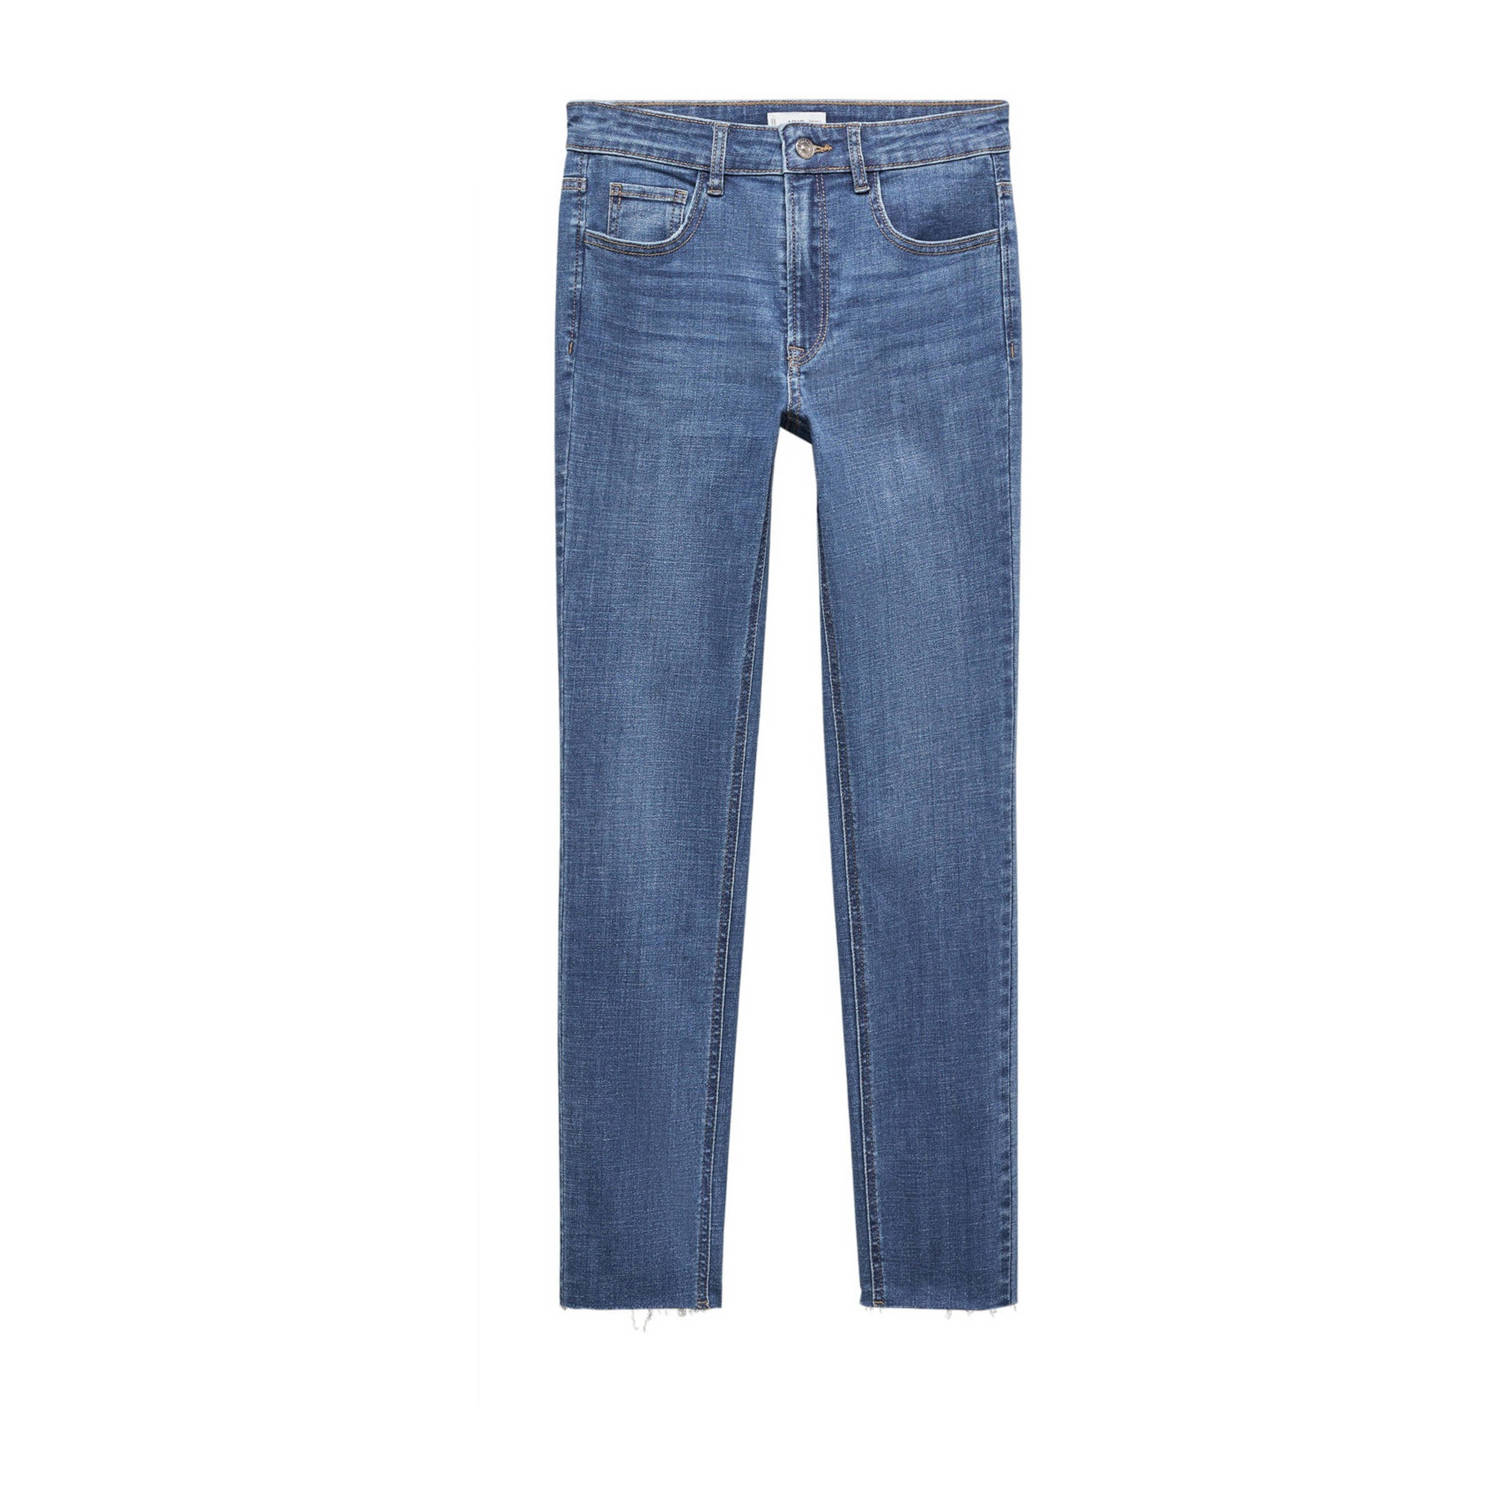 Mango Kids skinny jeans medium blue denim Blauw Meisjes Stretchdenim 152(XXS)